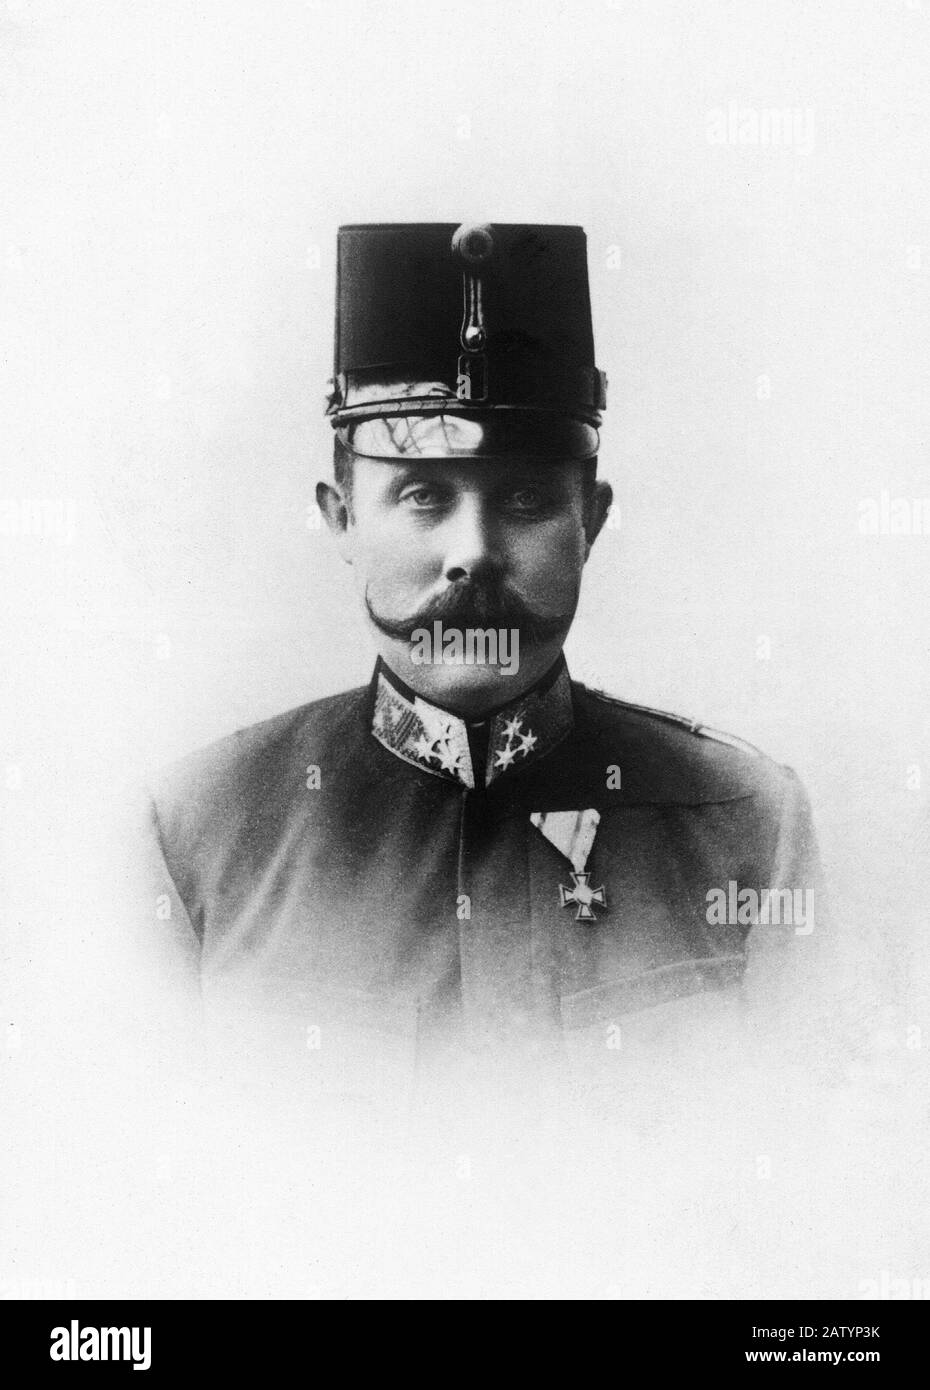 The Erzherzog ( Crown Prince ) Archduke  Franz Ferdinand d' Este ASBURG ( ABSBURG ) Von Osterreich ( Graz 1863 - Sarajevo 28 june 1914 ) - Killed in S Stock Photo